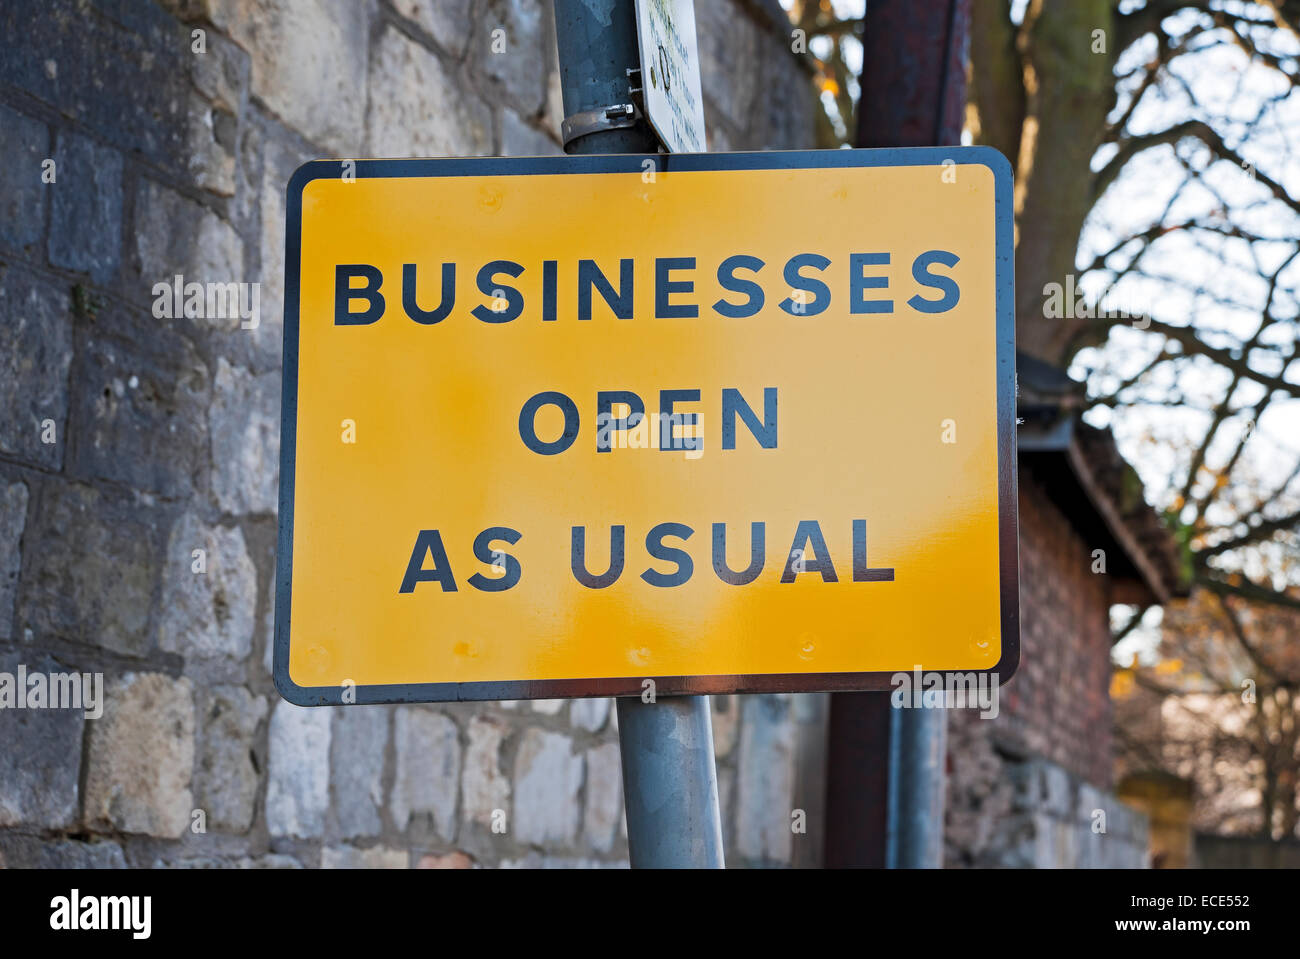 Cierre de negocios apertura de negocios como habitual señal de calle Inglaterra Reino Unido Reino Unido Gran Bretaña Foto de stock